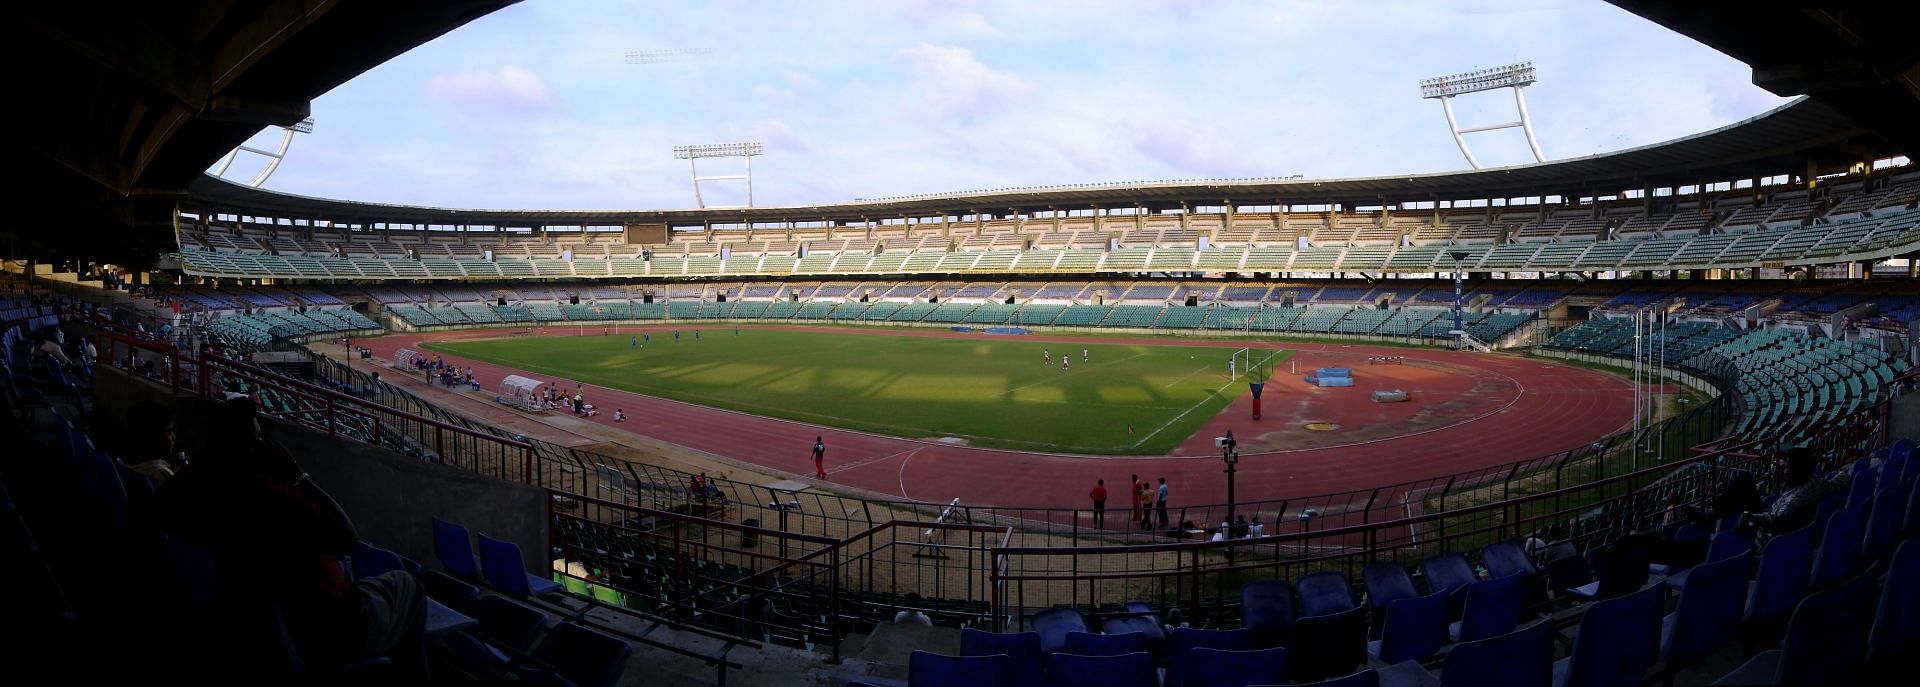 The Jawaharlal Nehru Stadium in Chennai. (PC: SDAT)